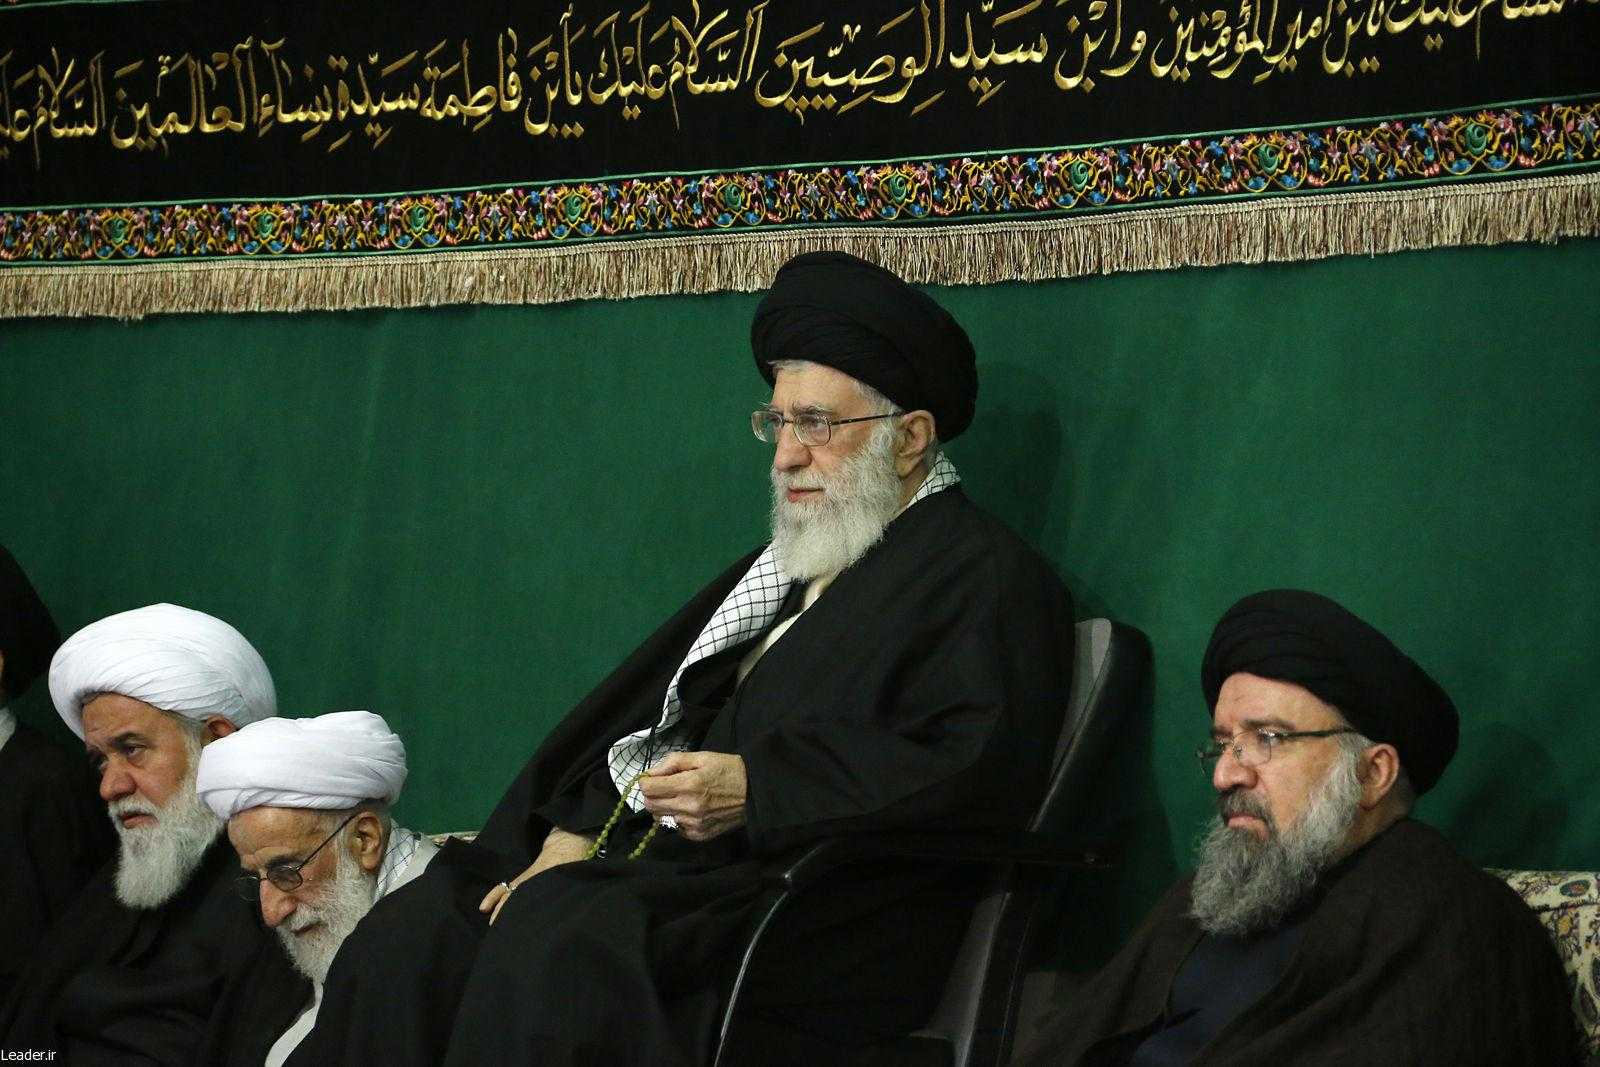 Ortadaki İran Dini Lideri Ali Hamaney - Sağdaki Ahmed Hatemi